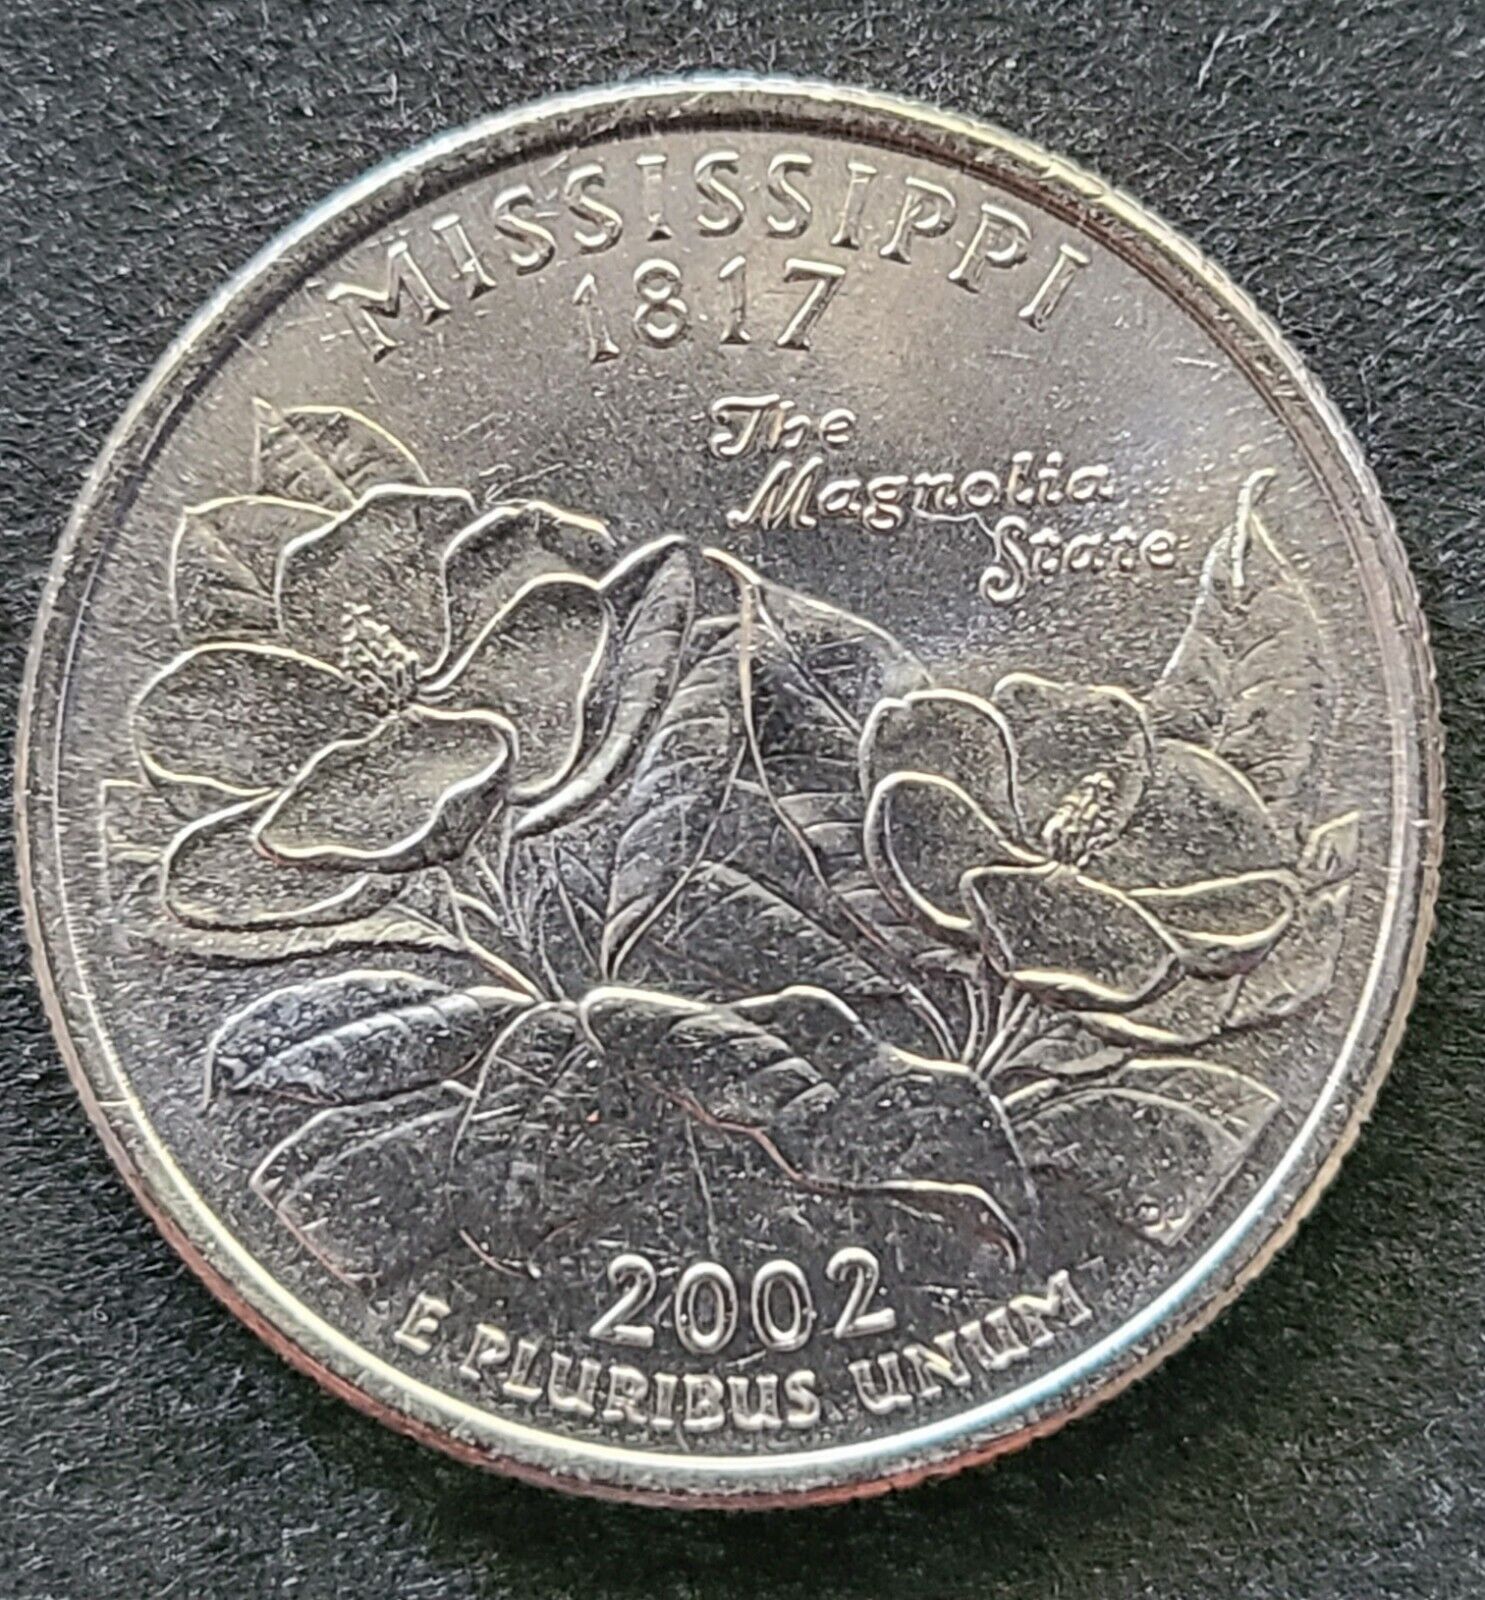 Uncirculated Mississippi D 2002 Statehood Quarter